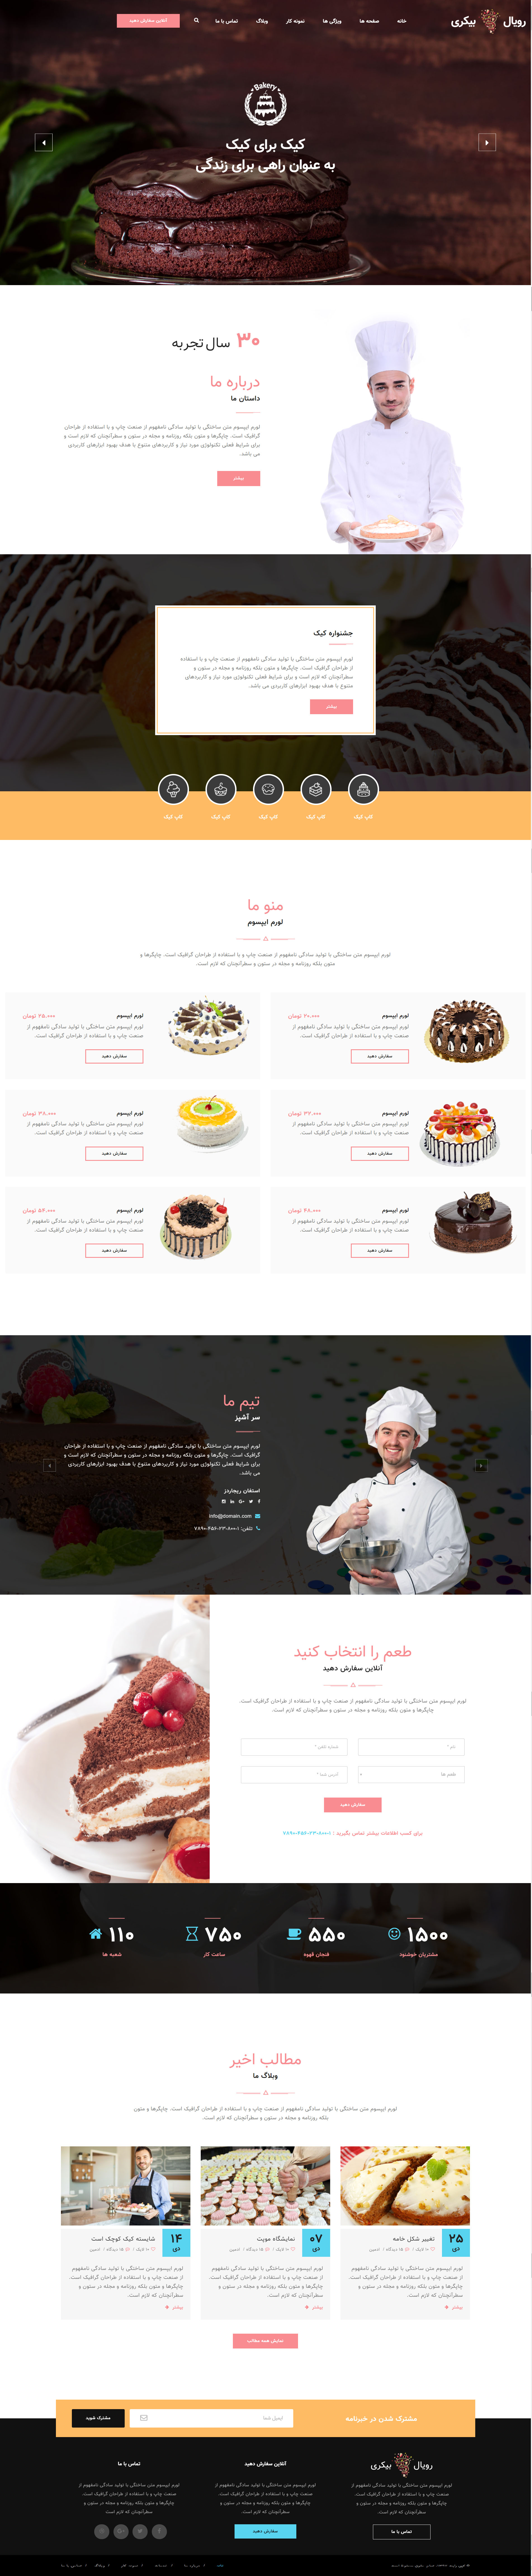 قالب RoyakBakery | قالب html کیک و شیرینی پزی رویال بیکری